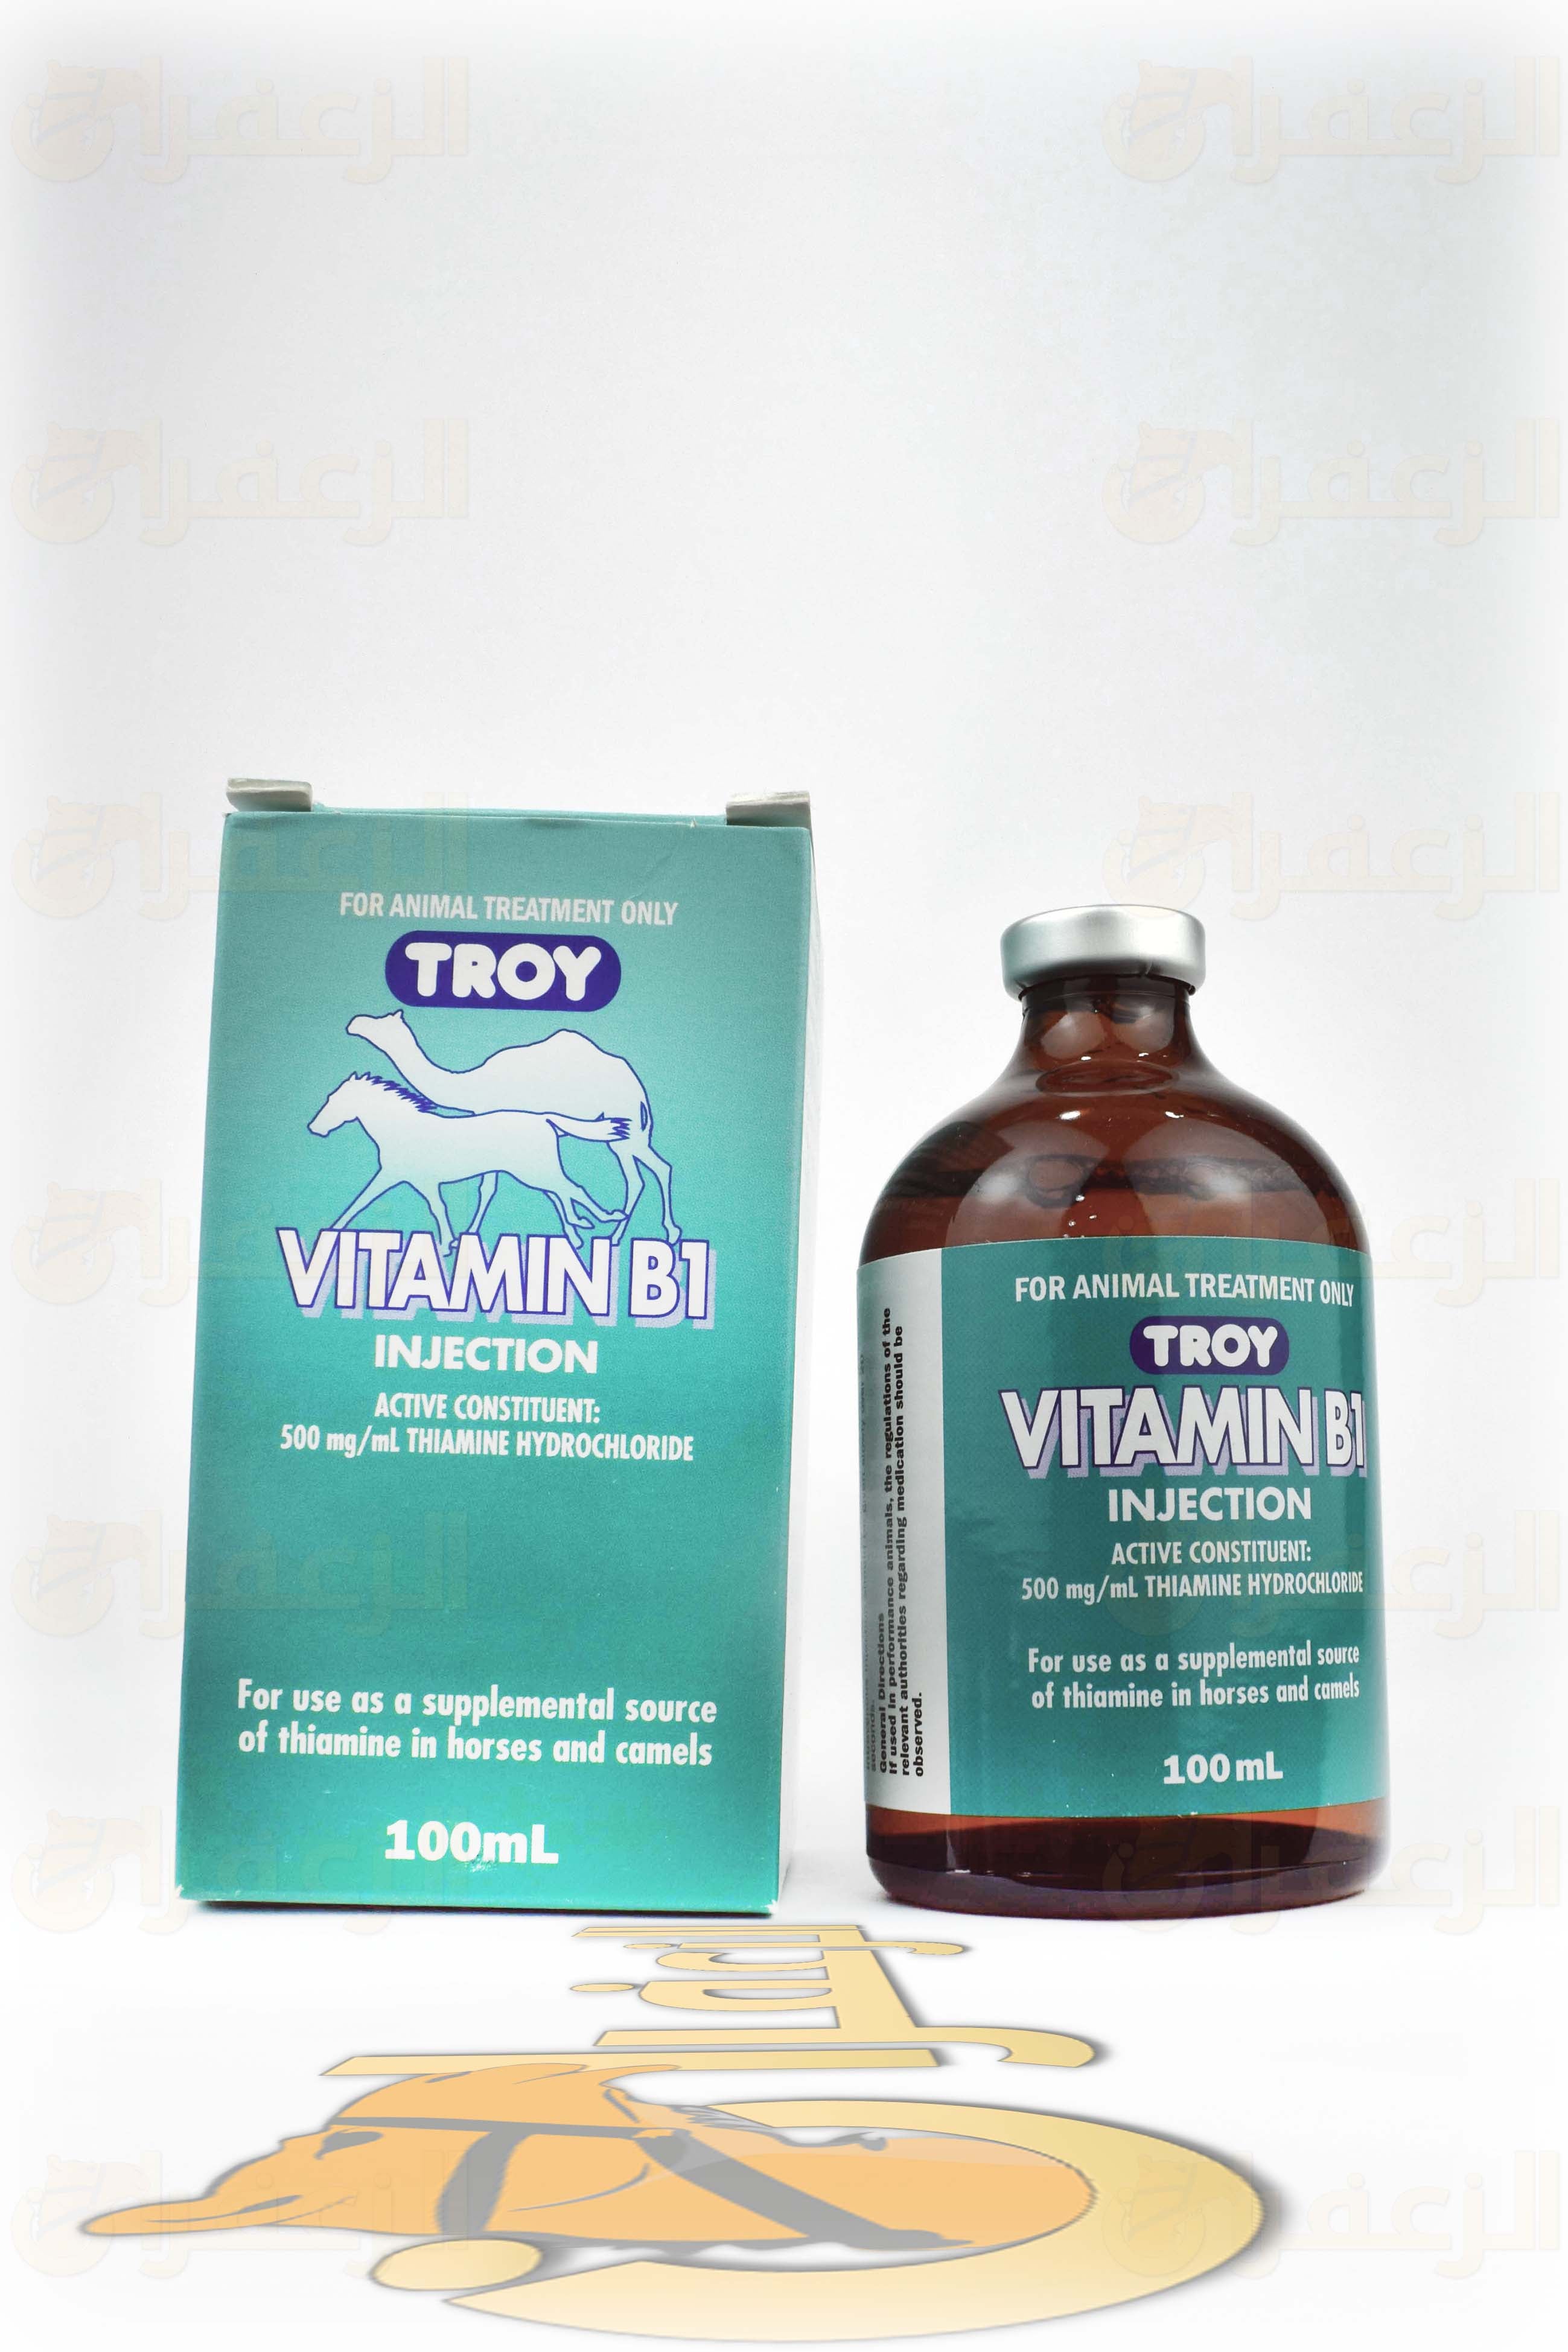 فيتامين ب1 تروي \ VITAMIN B1 - الزعفران